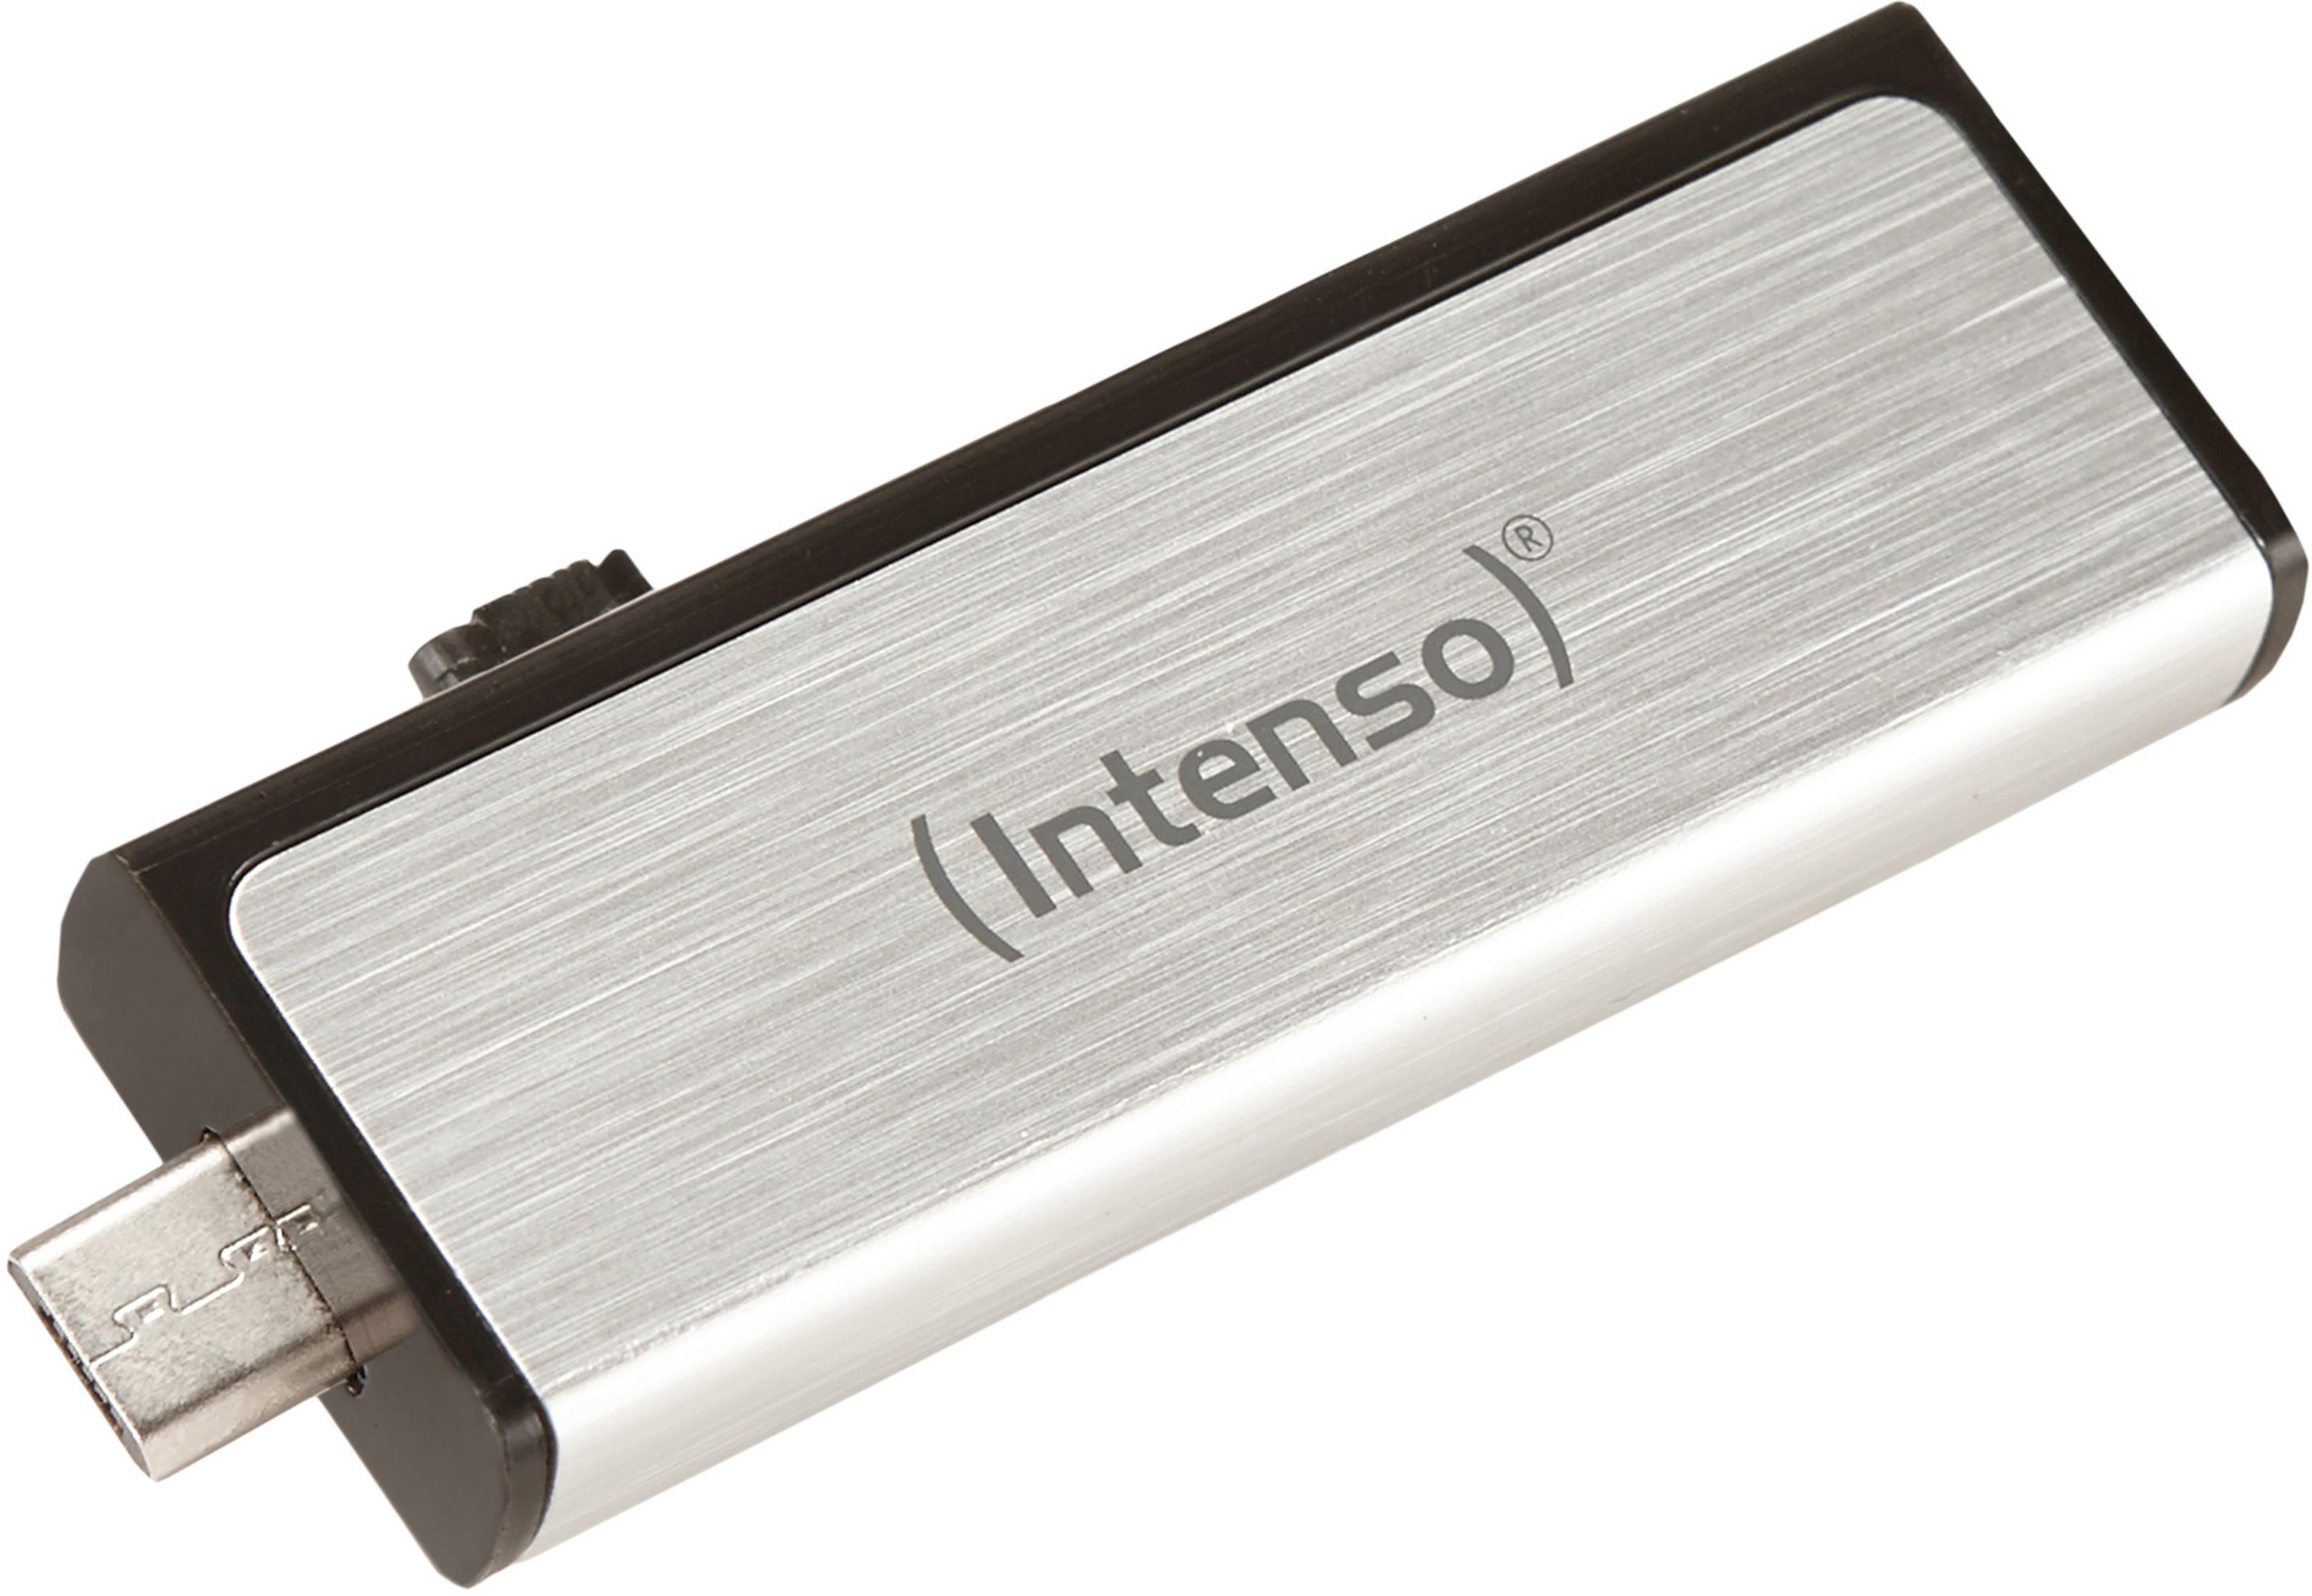 USB GB) - 16 + 16 INT MOBILE LINE (Silber, USB USB-Stick GB MICRO INTENSO 3523470 AN